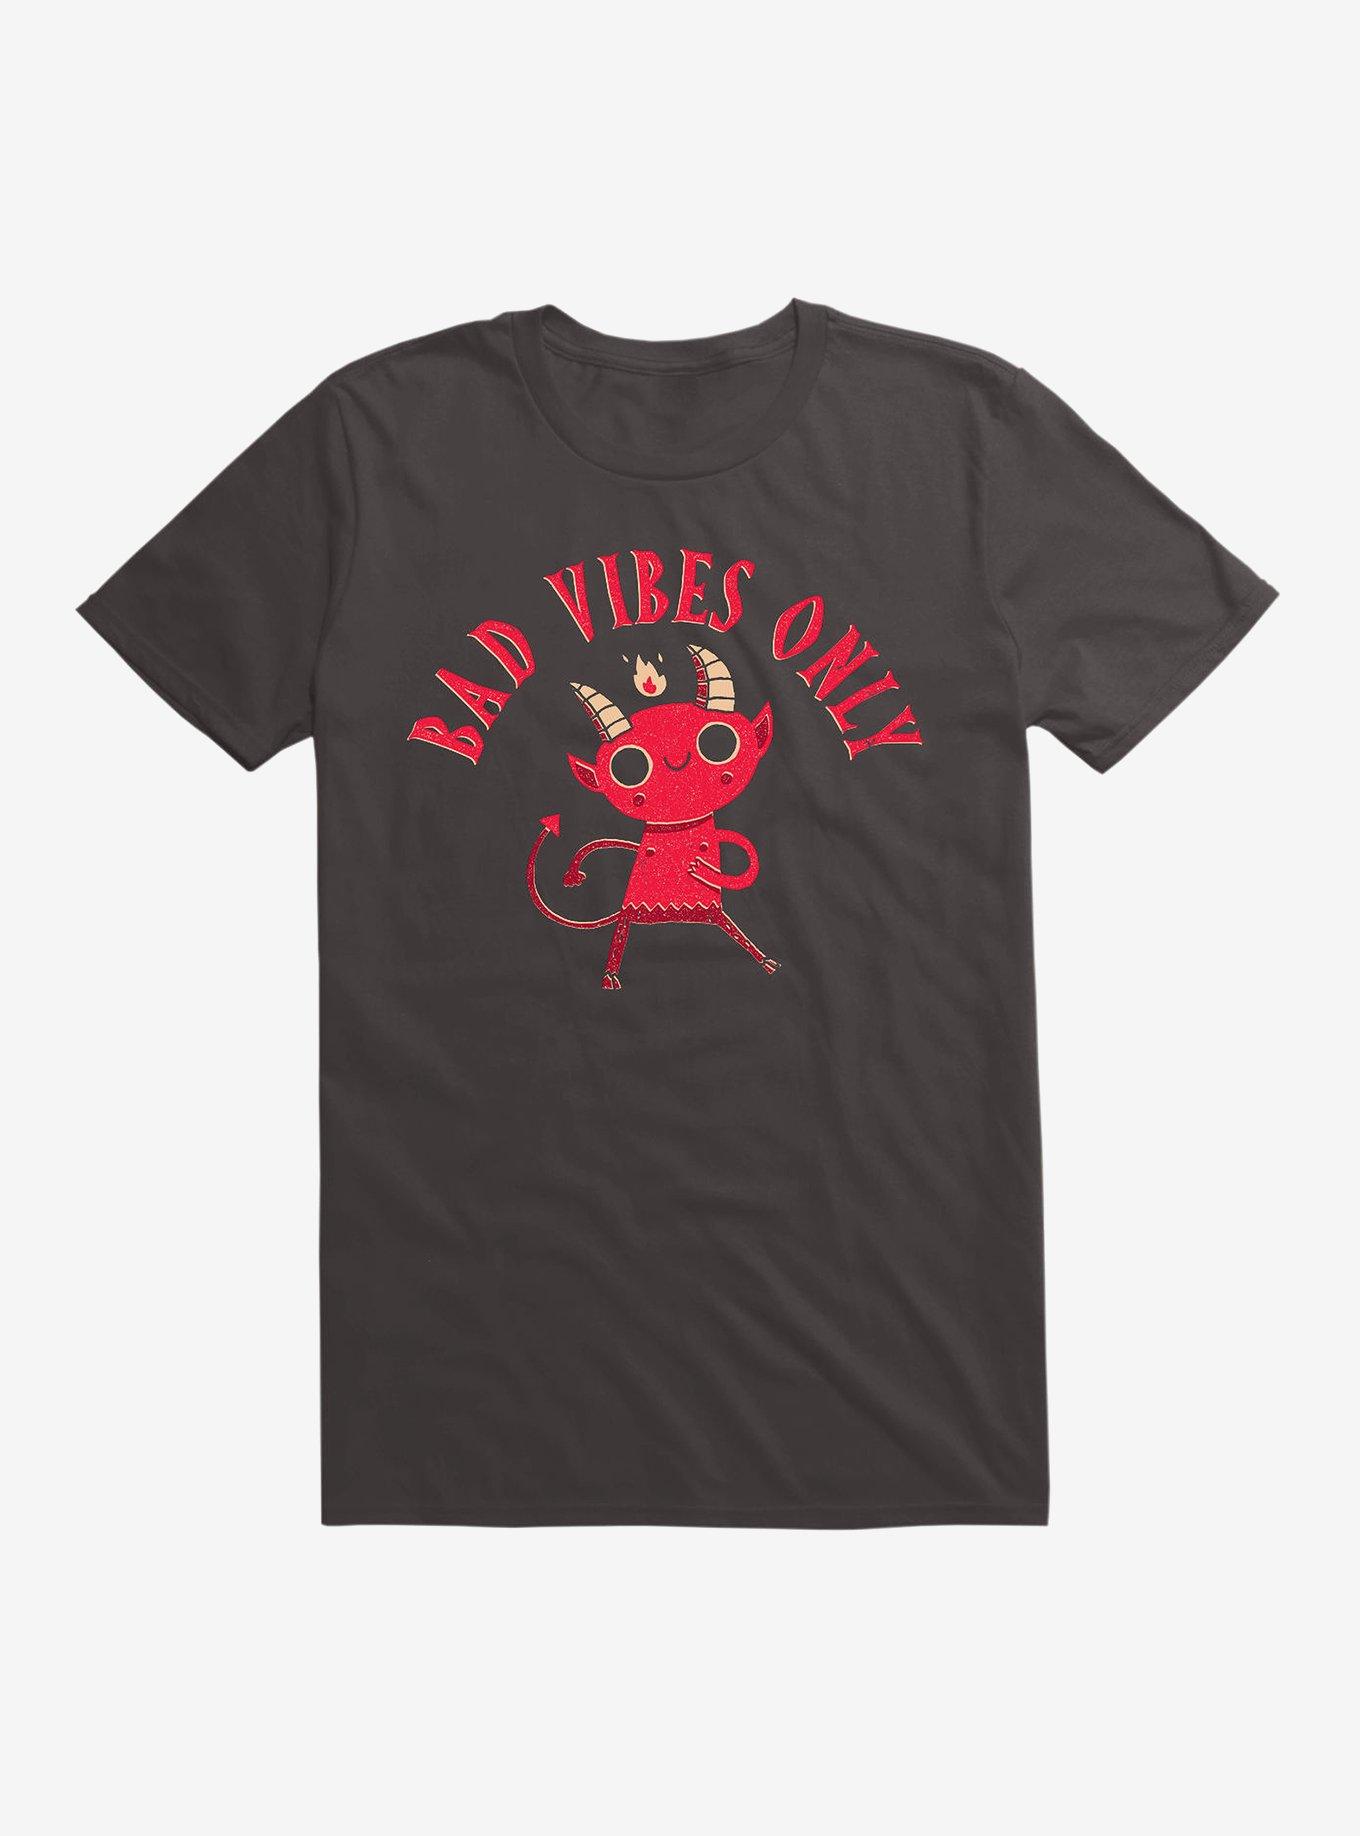 Bad Vibes T-Shirt, BLACK, hi-res